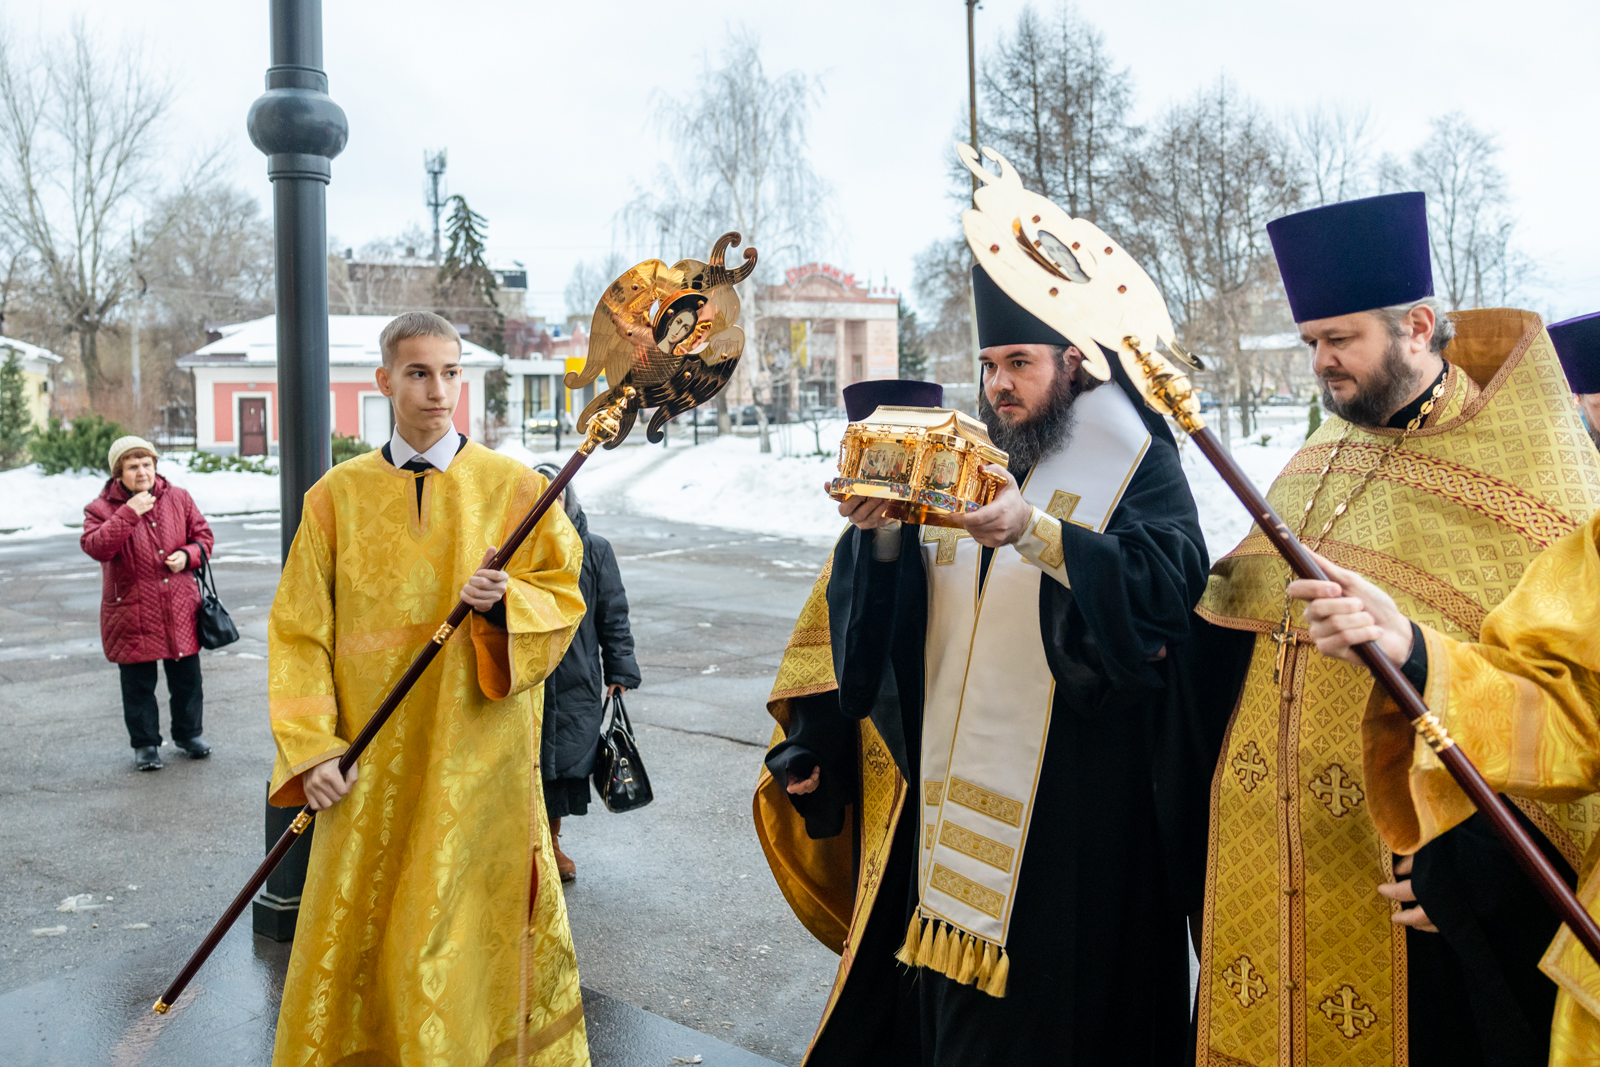 Частица мощей святителя Николая передана в Свято-Троицкий кафедральный собор г. Покровска (Энгельса)